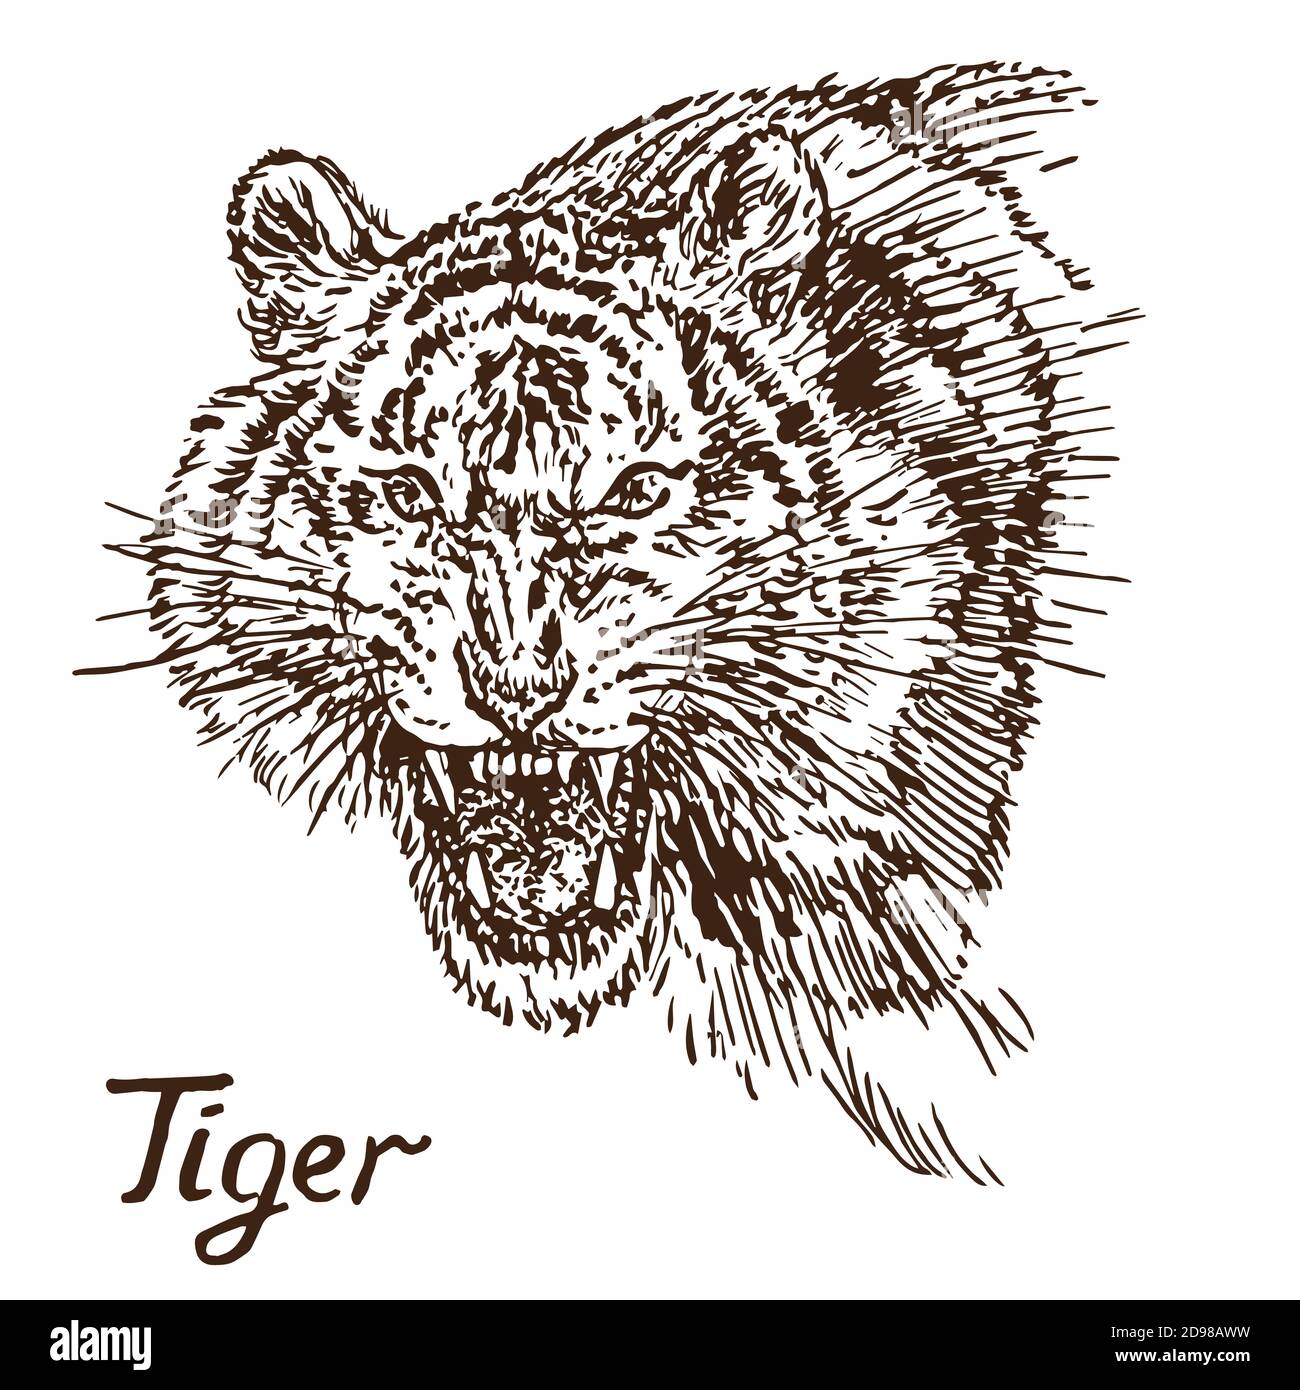 Tiger knurrende Porträt, hat einen verbitterten Mund geöffnet, Eckzähne, handgezeichnete Doodle, Skizze in Tiefdruck Stil Illustration Stockfoto